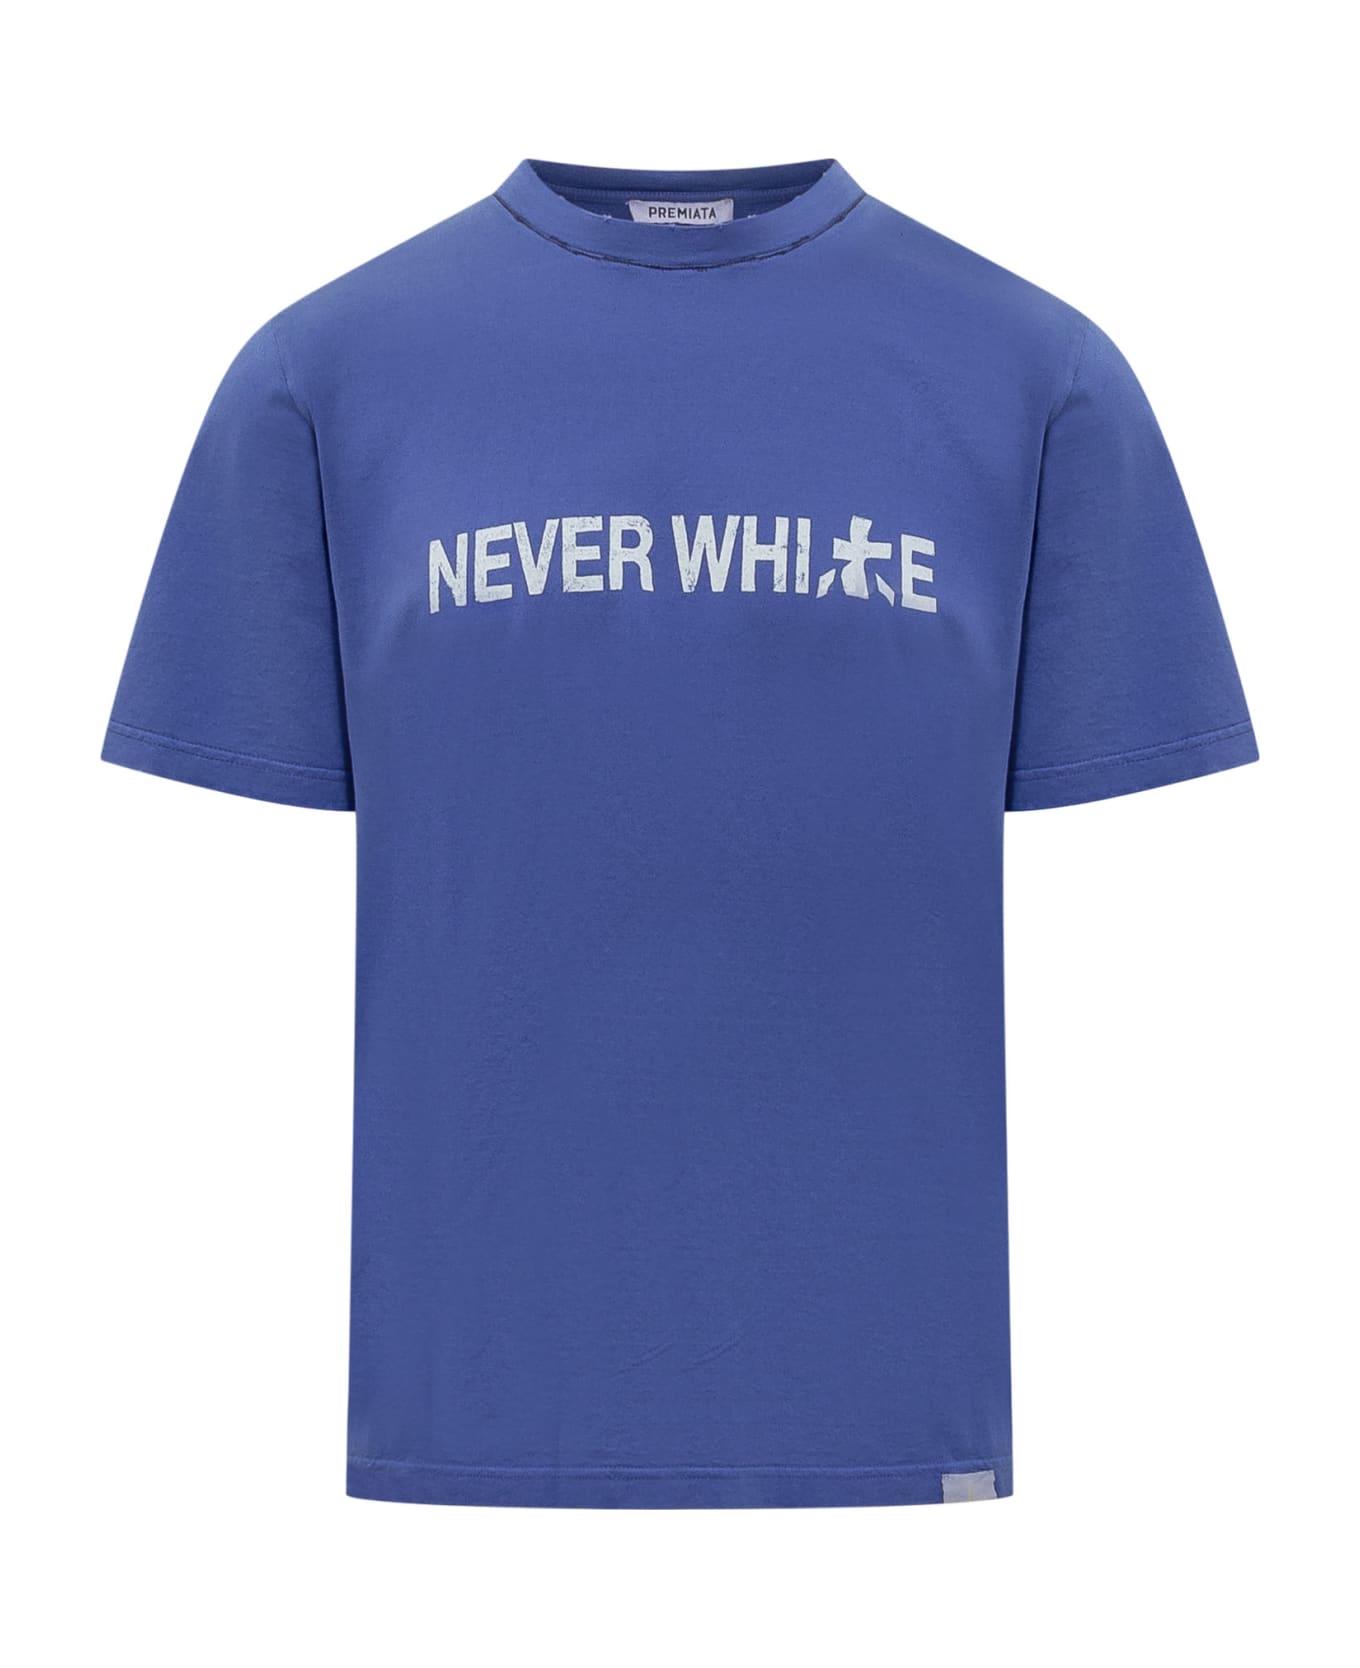 Premiata Neverwhite T-shirt - BLUE